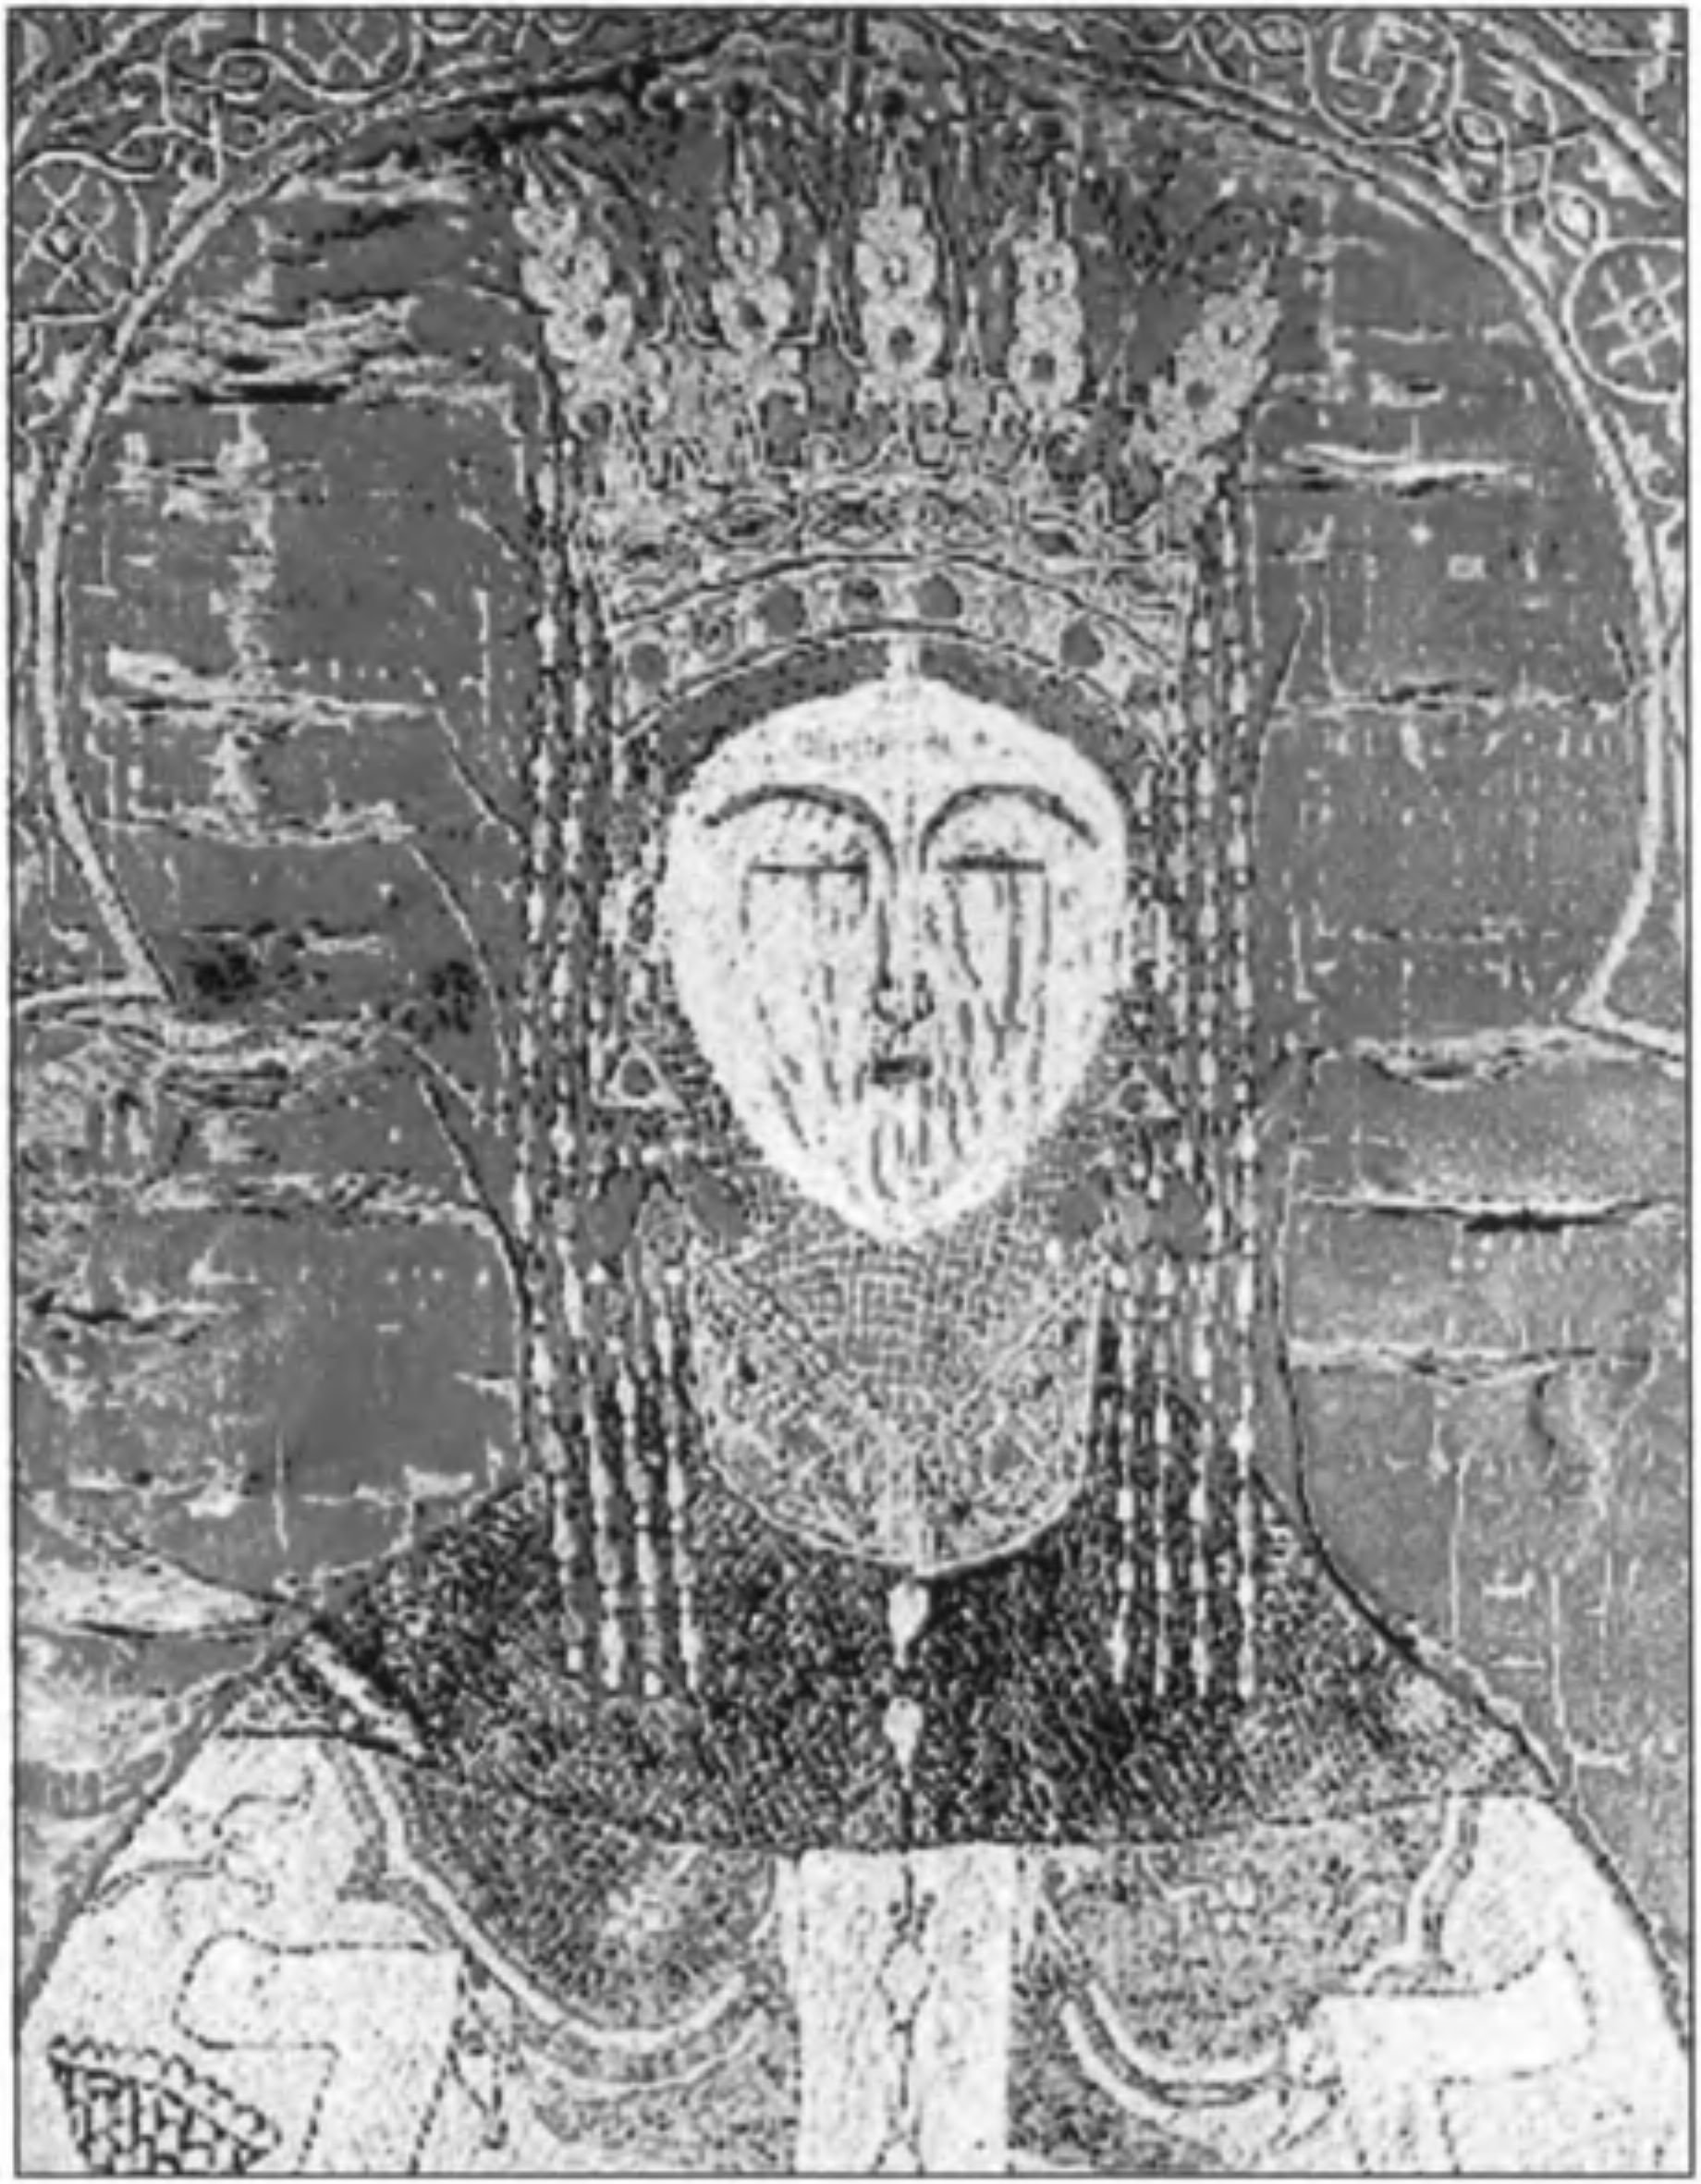 Мария Палеологиня, княжна Мангупская. Автопортрет. Вышивка на погребальной пелене, 1477 г. Монастырь Путна, Молдавия